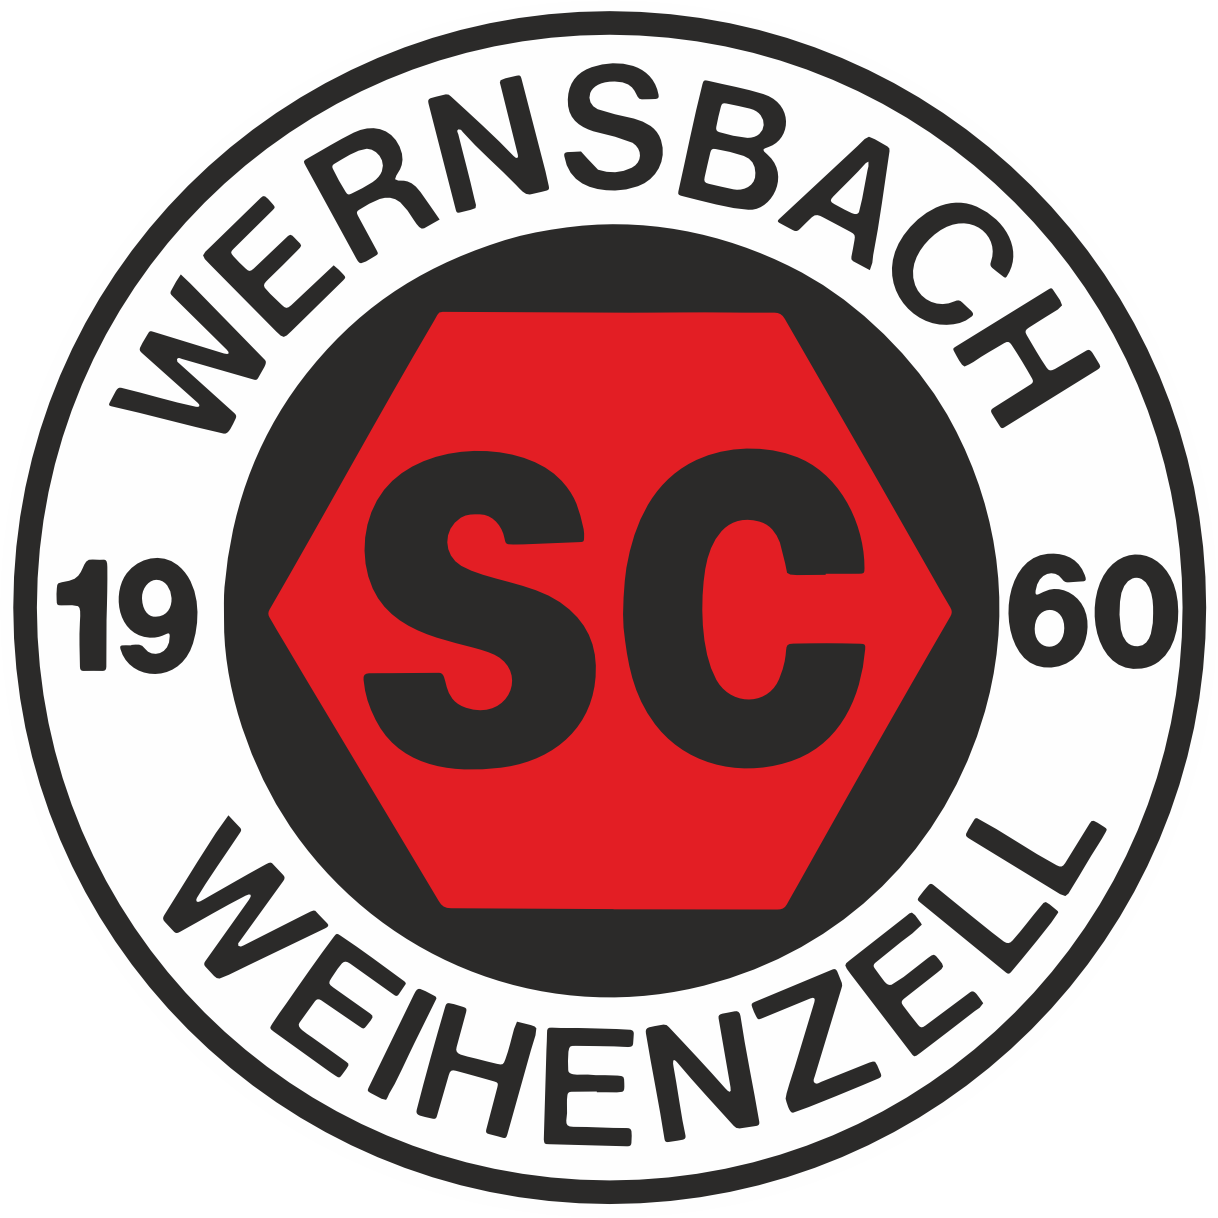 SC Wernsbach Weihenzell Logo